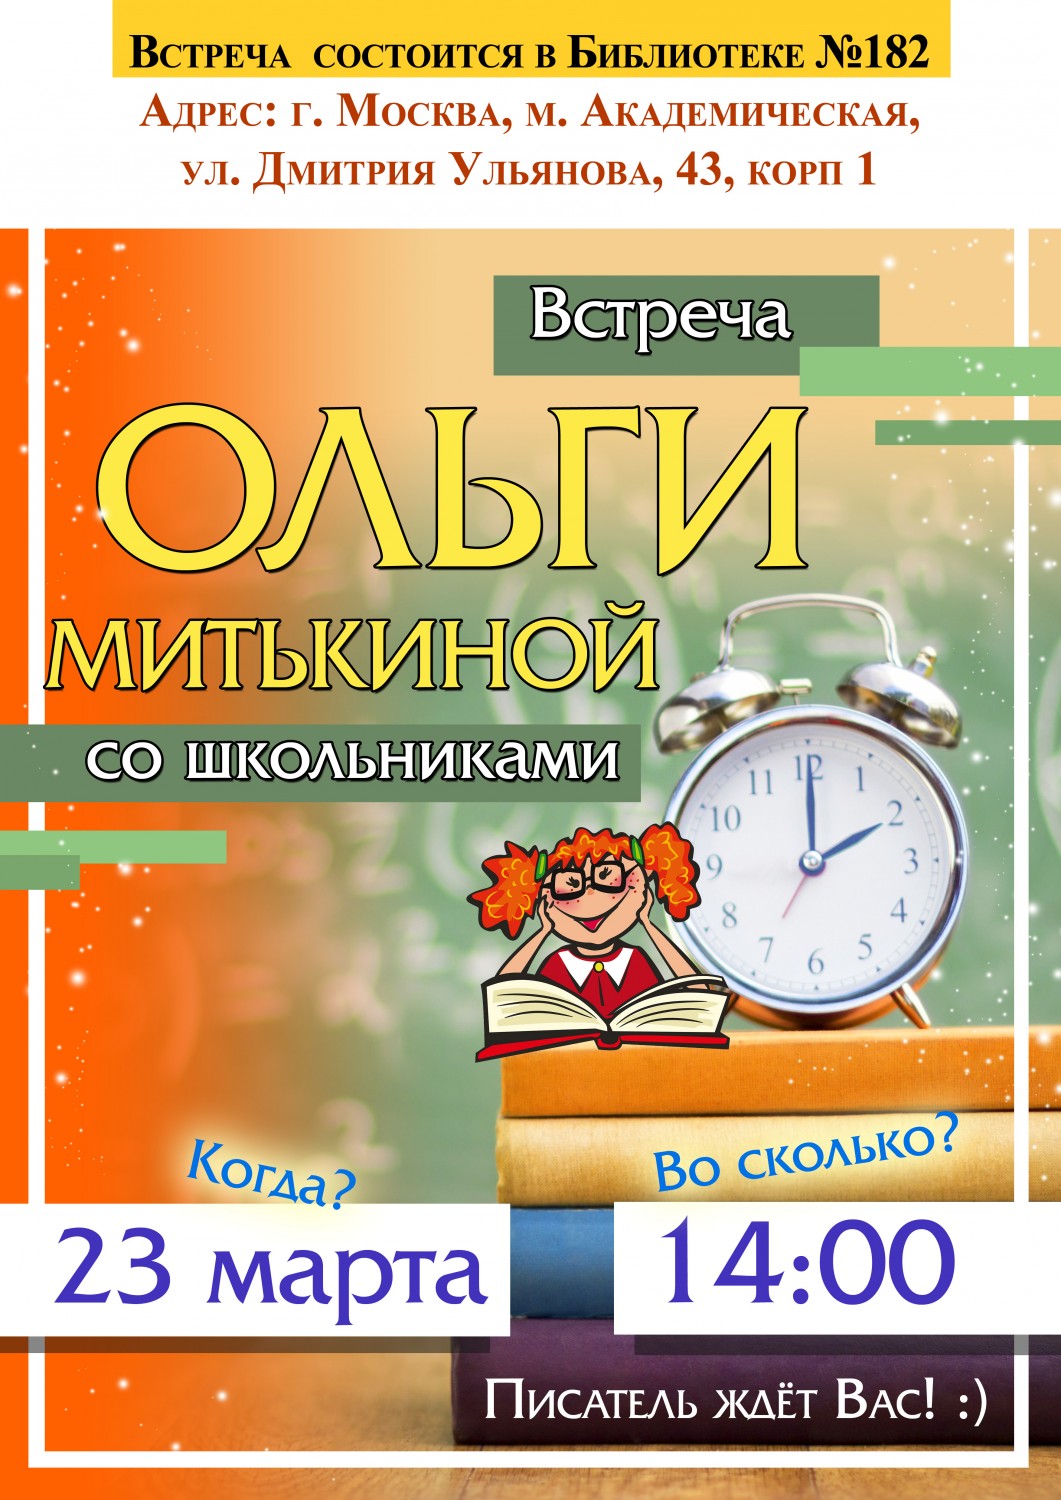 23 марта Ольга Митькина встретится с учениками московской школы